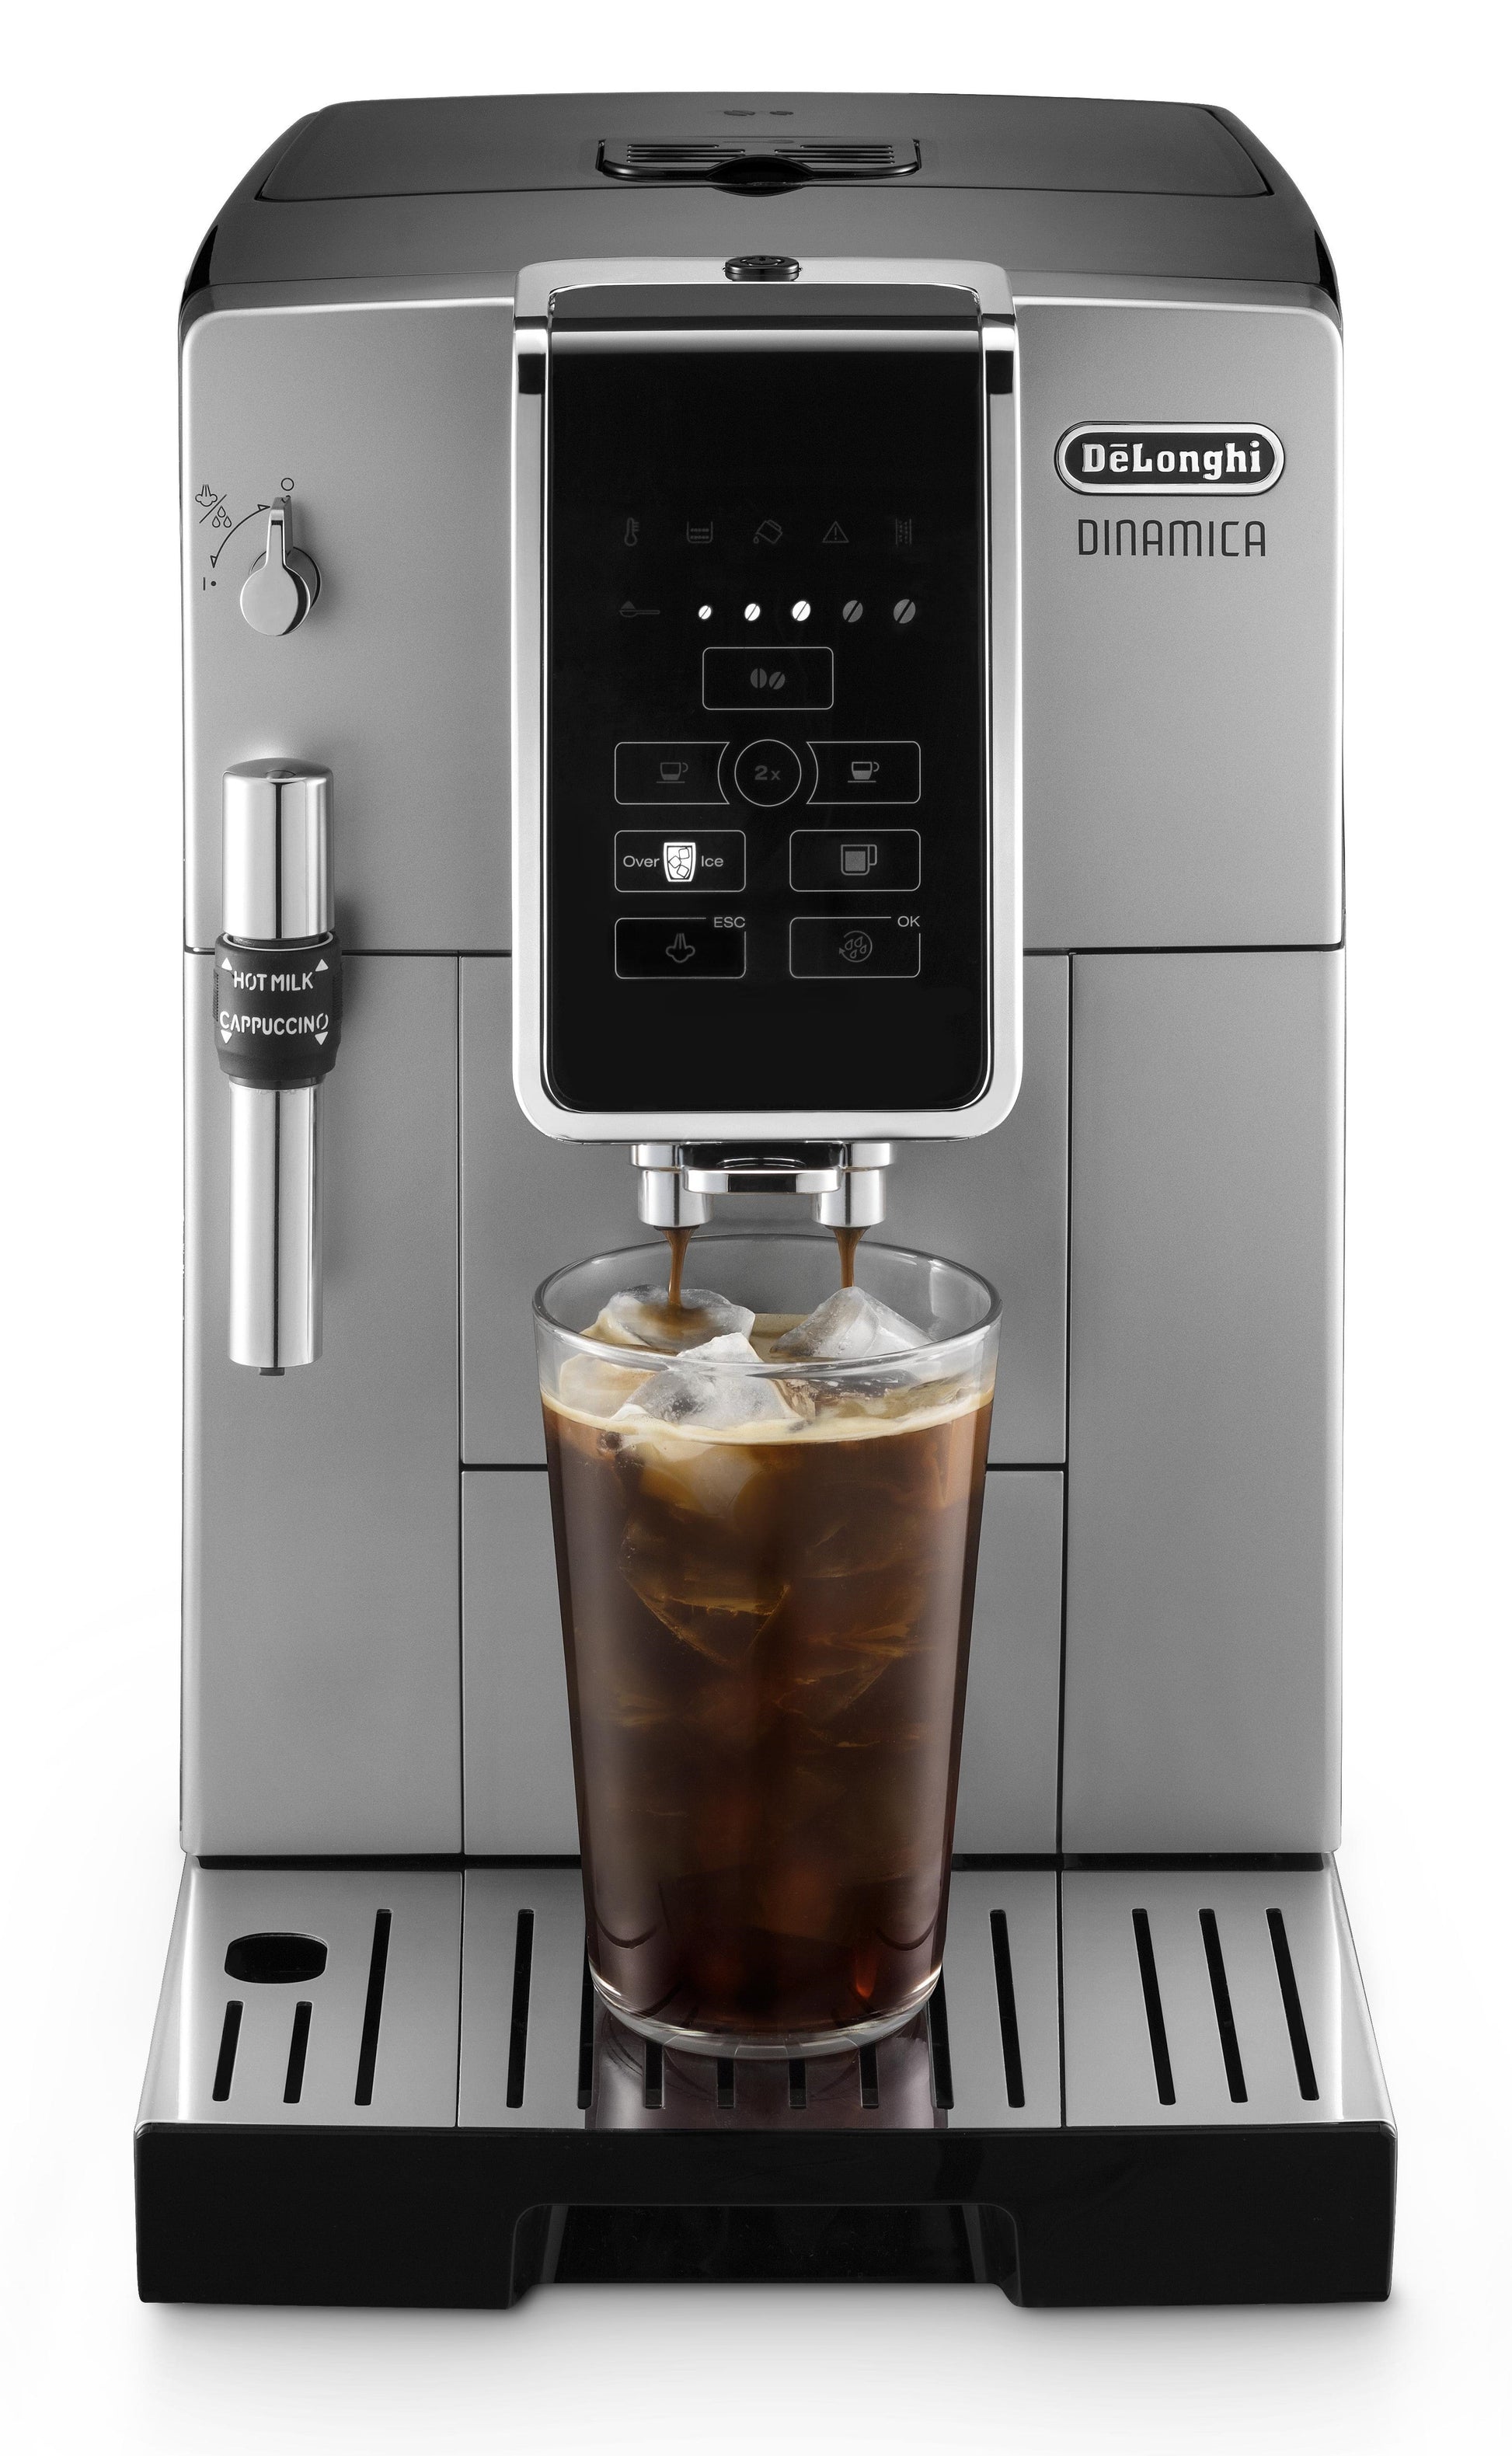 $250 - Delonghi ® Combination Coffee/Espressso Machine